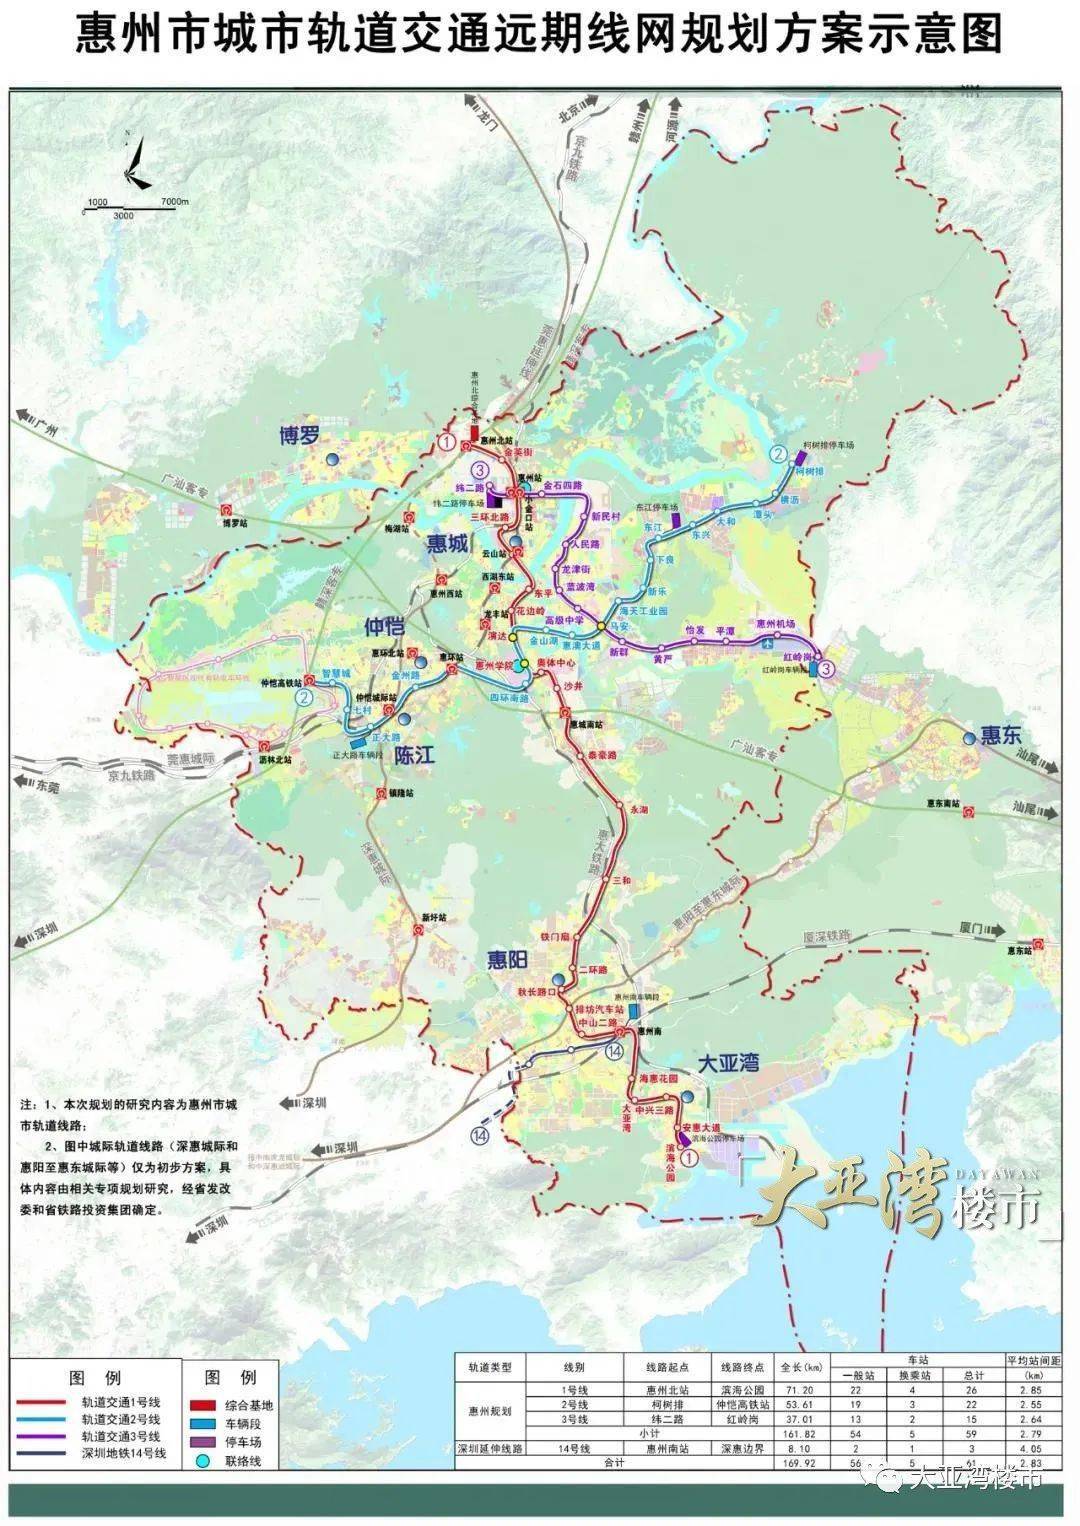 快看!惠州市城市轨道交通线网规划在这里